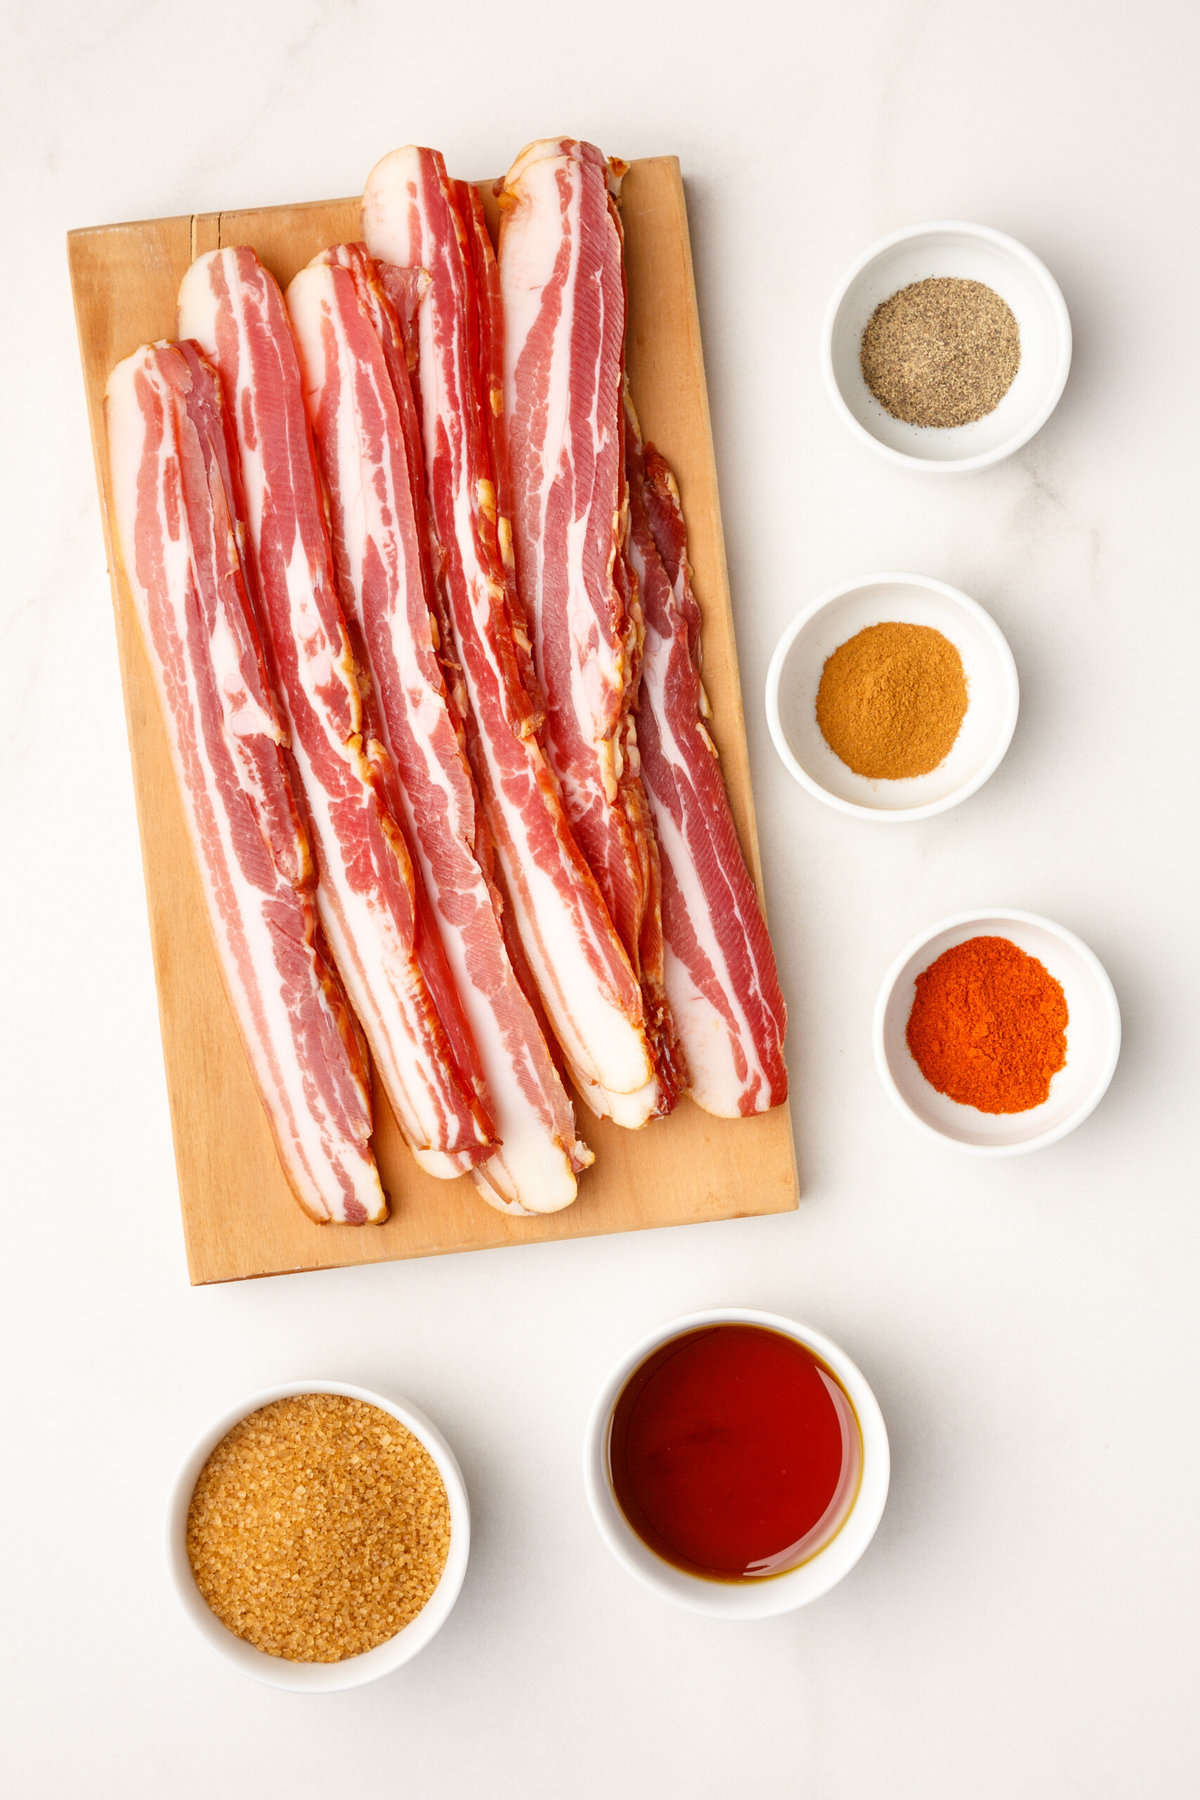 ingredients to make million dollar bacon. 